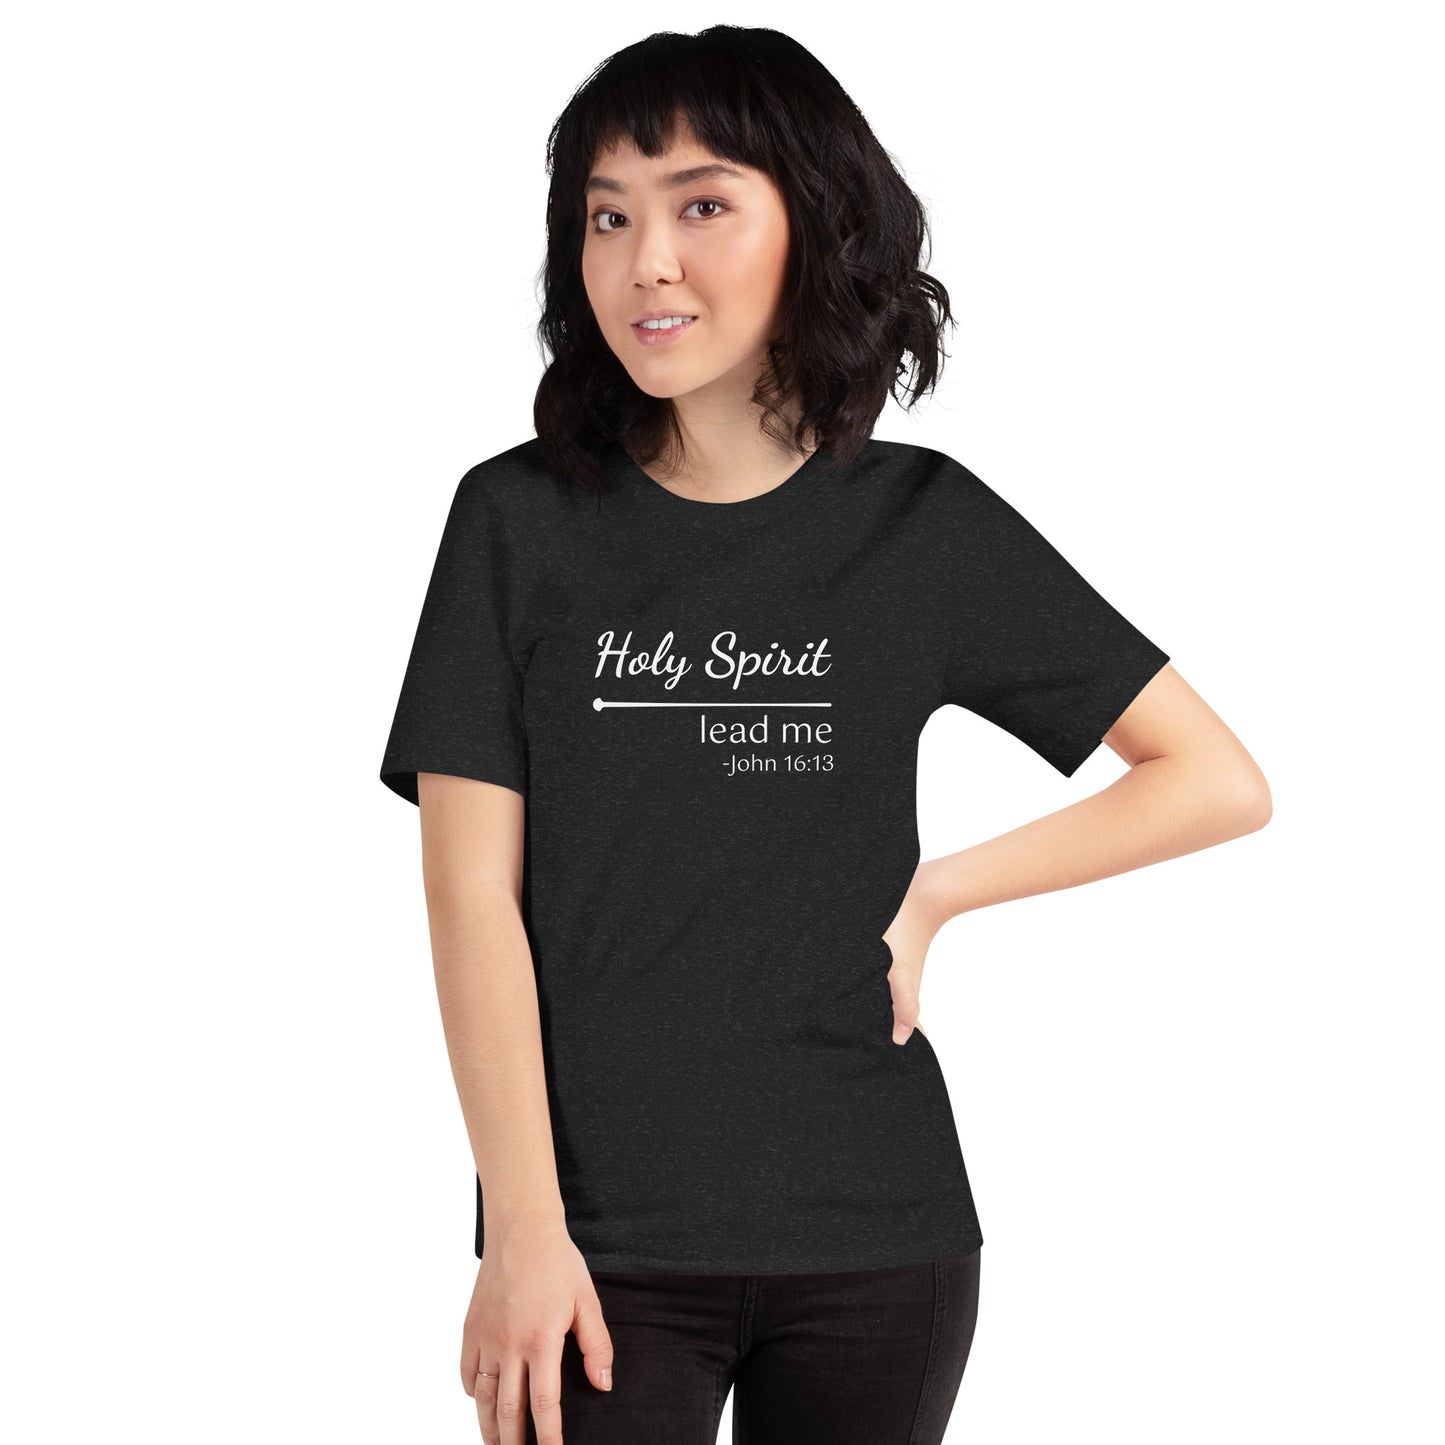 Holy Spirit Women's Short Sleeve T-Shirt